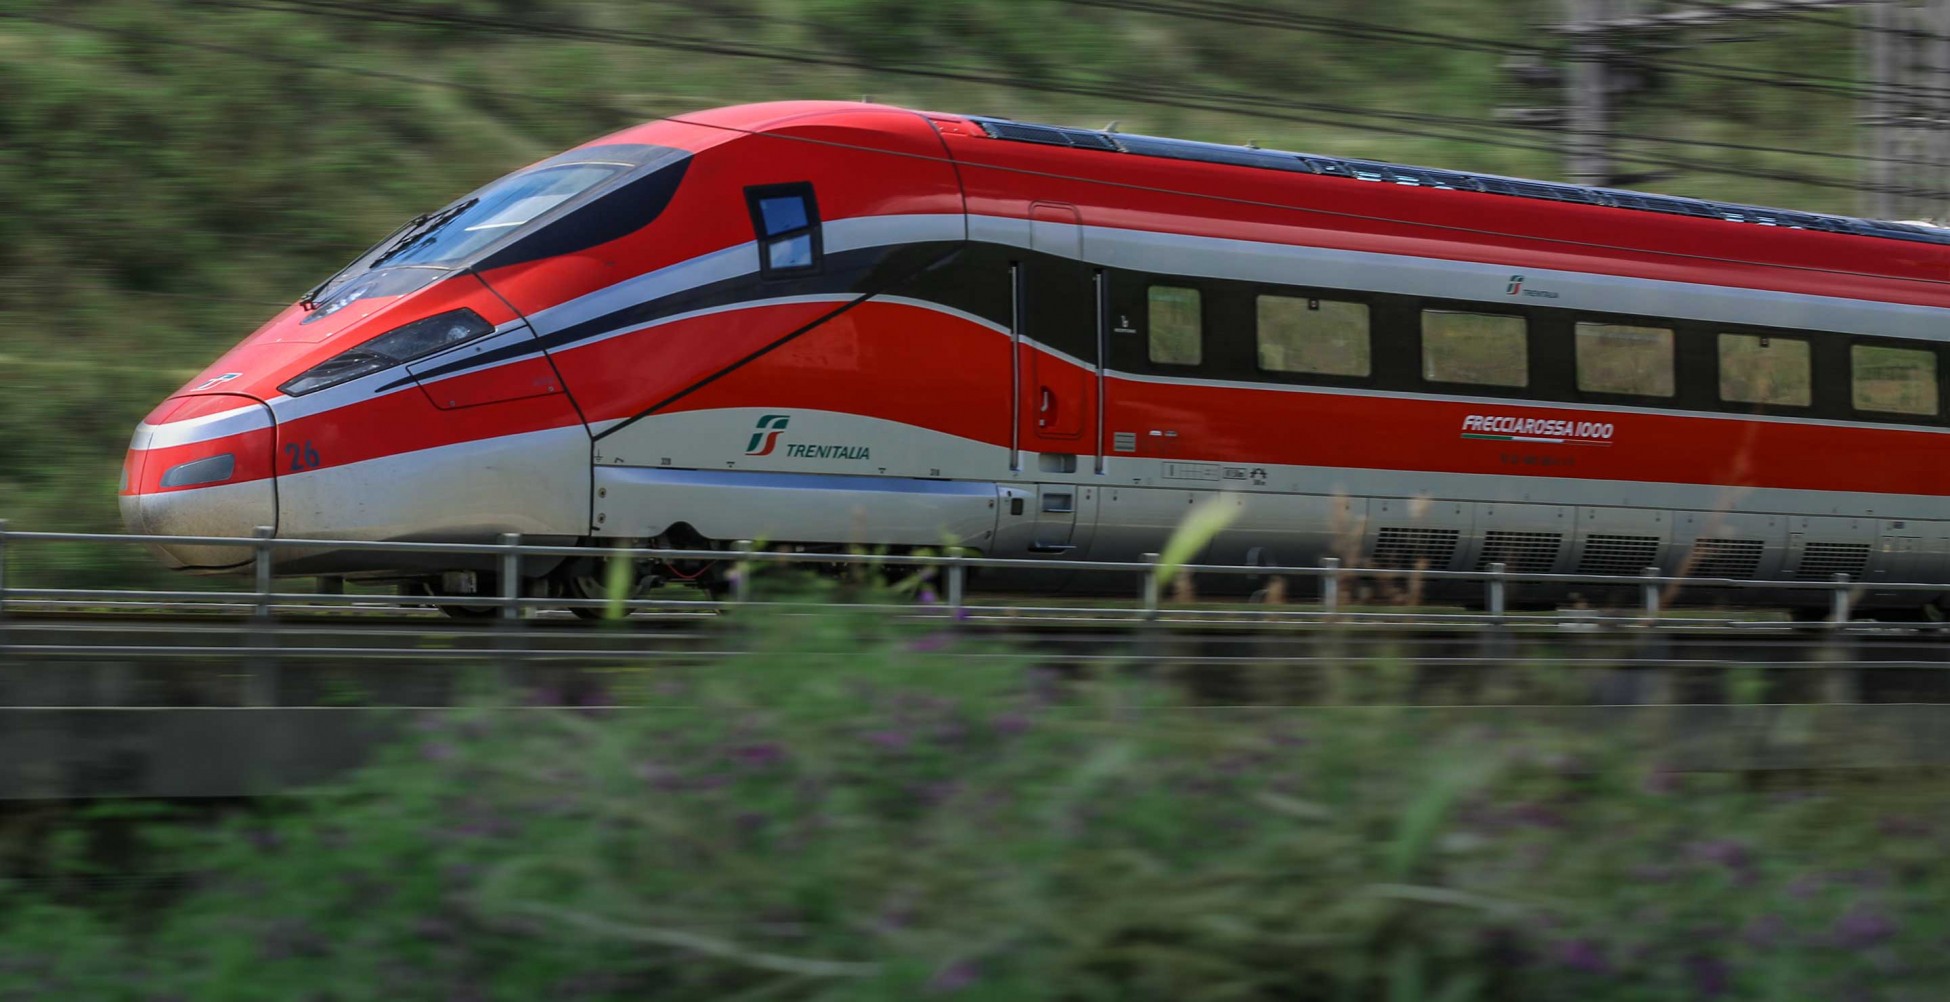 Ρυθμιστική Αρχή Σιδηροδρόμων: Ολοκληρώθηκε η διαδικασία πιστοποίησης της αμαξοστοιχίας ETR 470